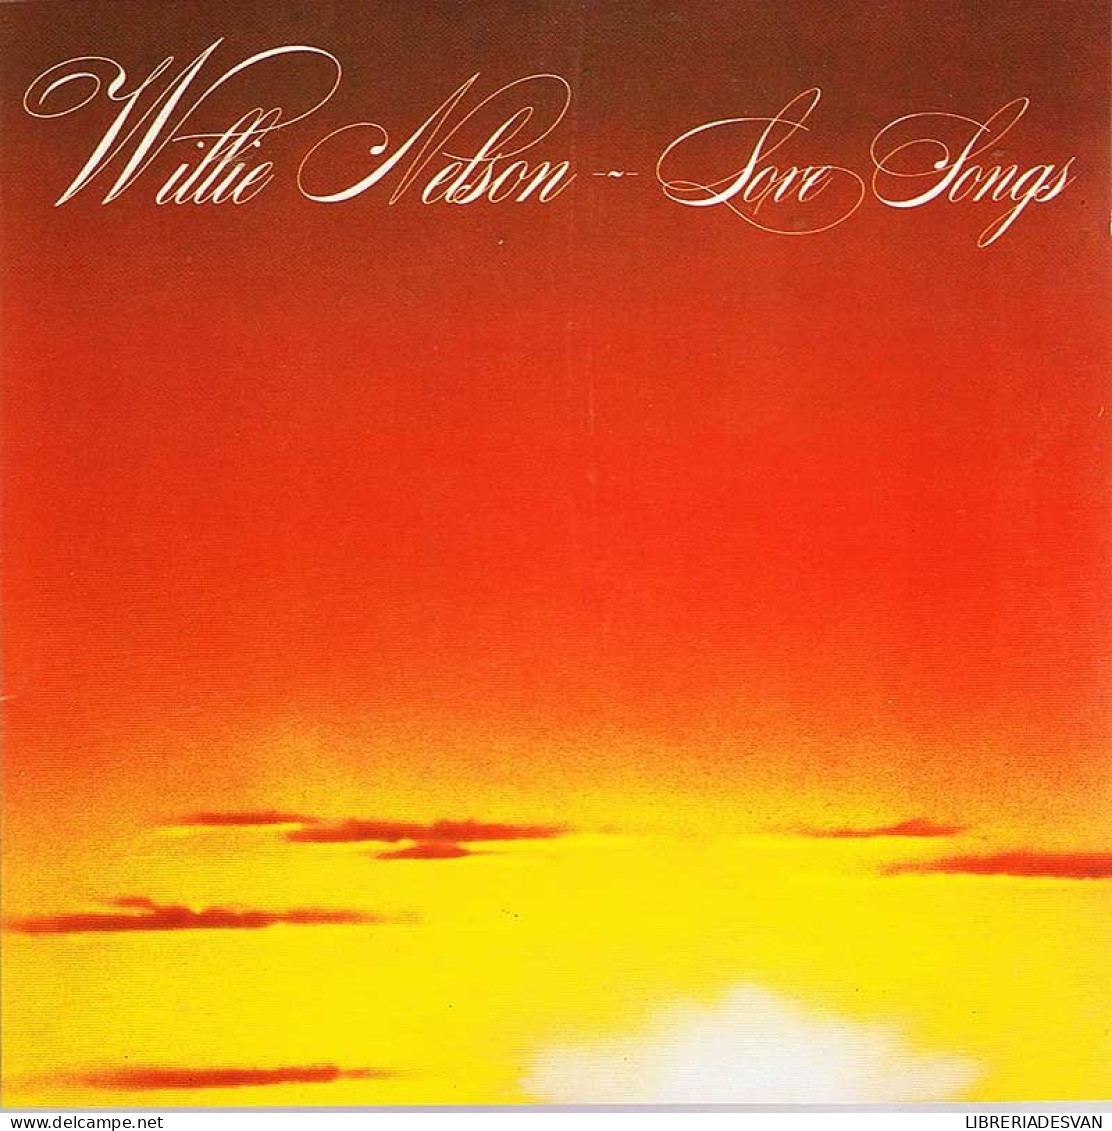 Willie Nelson - Love Songs. CD - Country En Folk